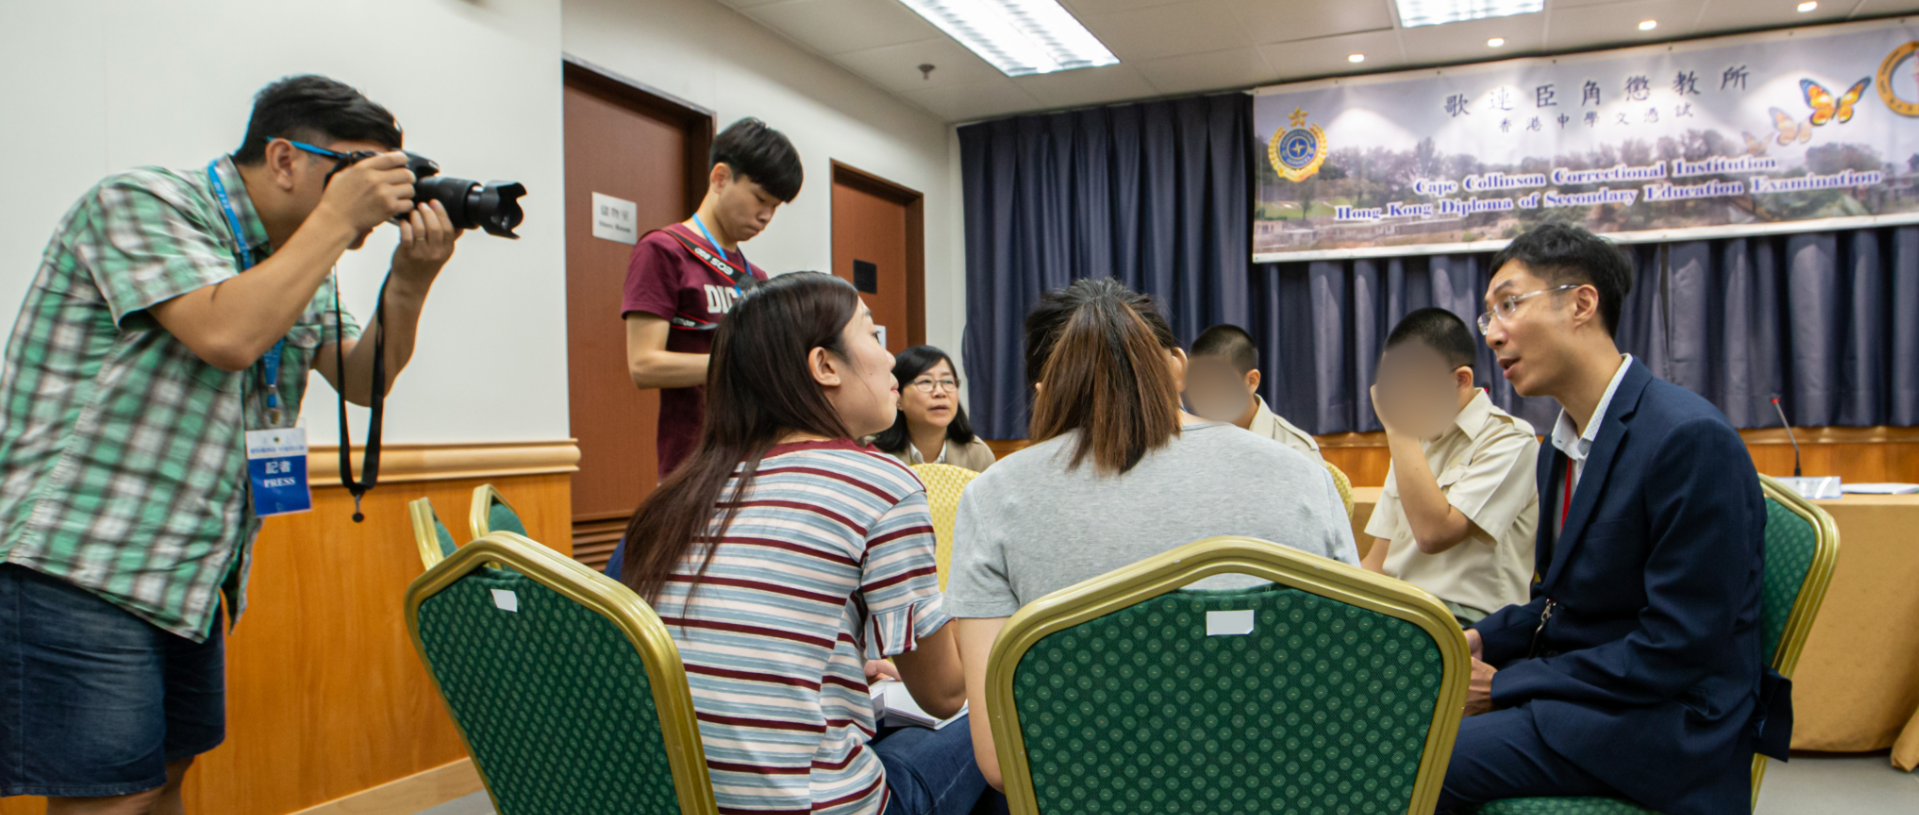 傳媒訪問參加香港中學文憑考試的青少年在囚人士和導師。